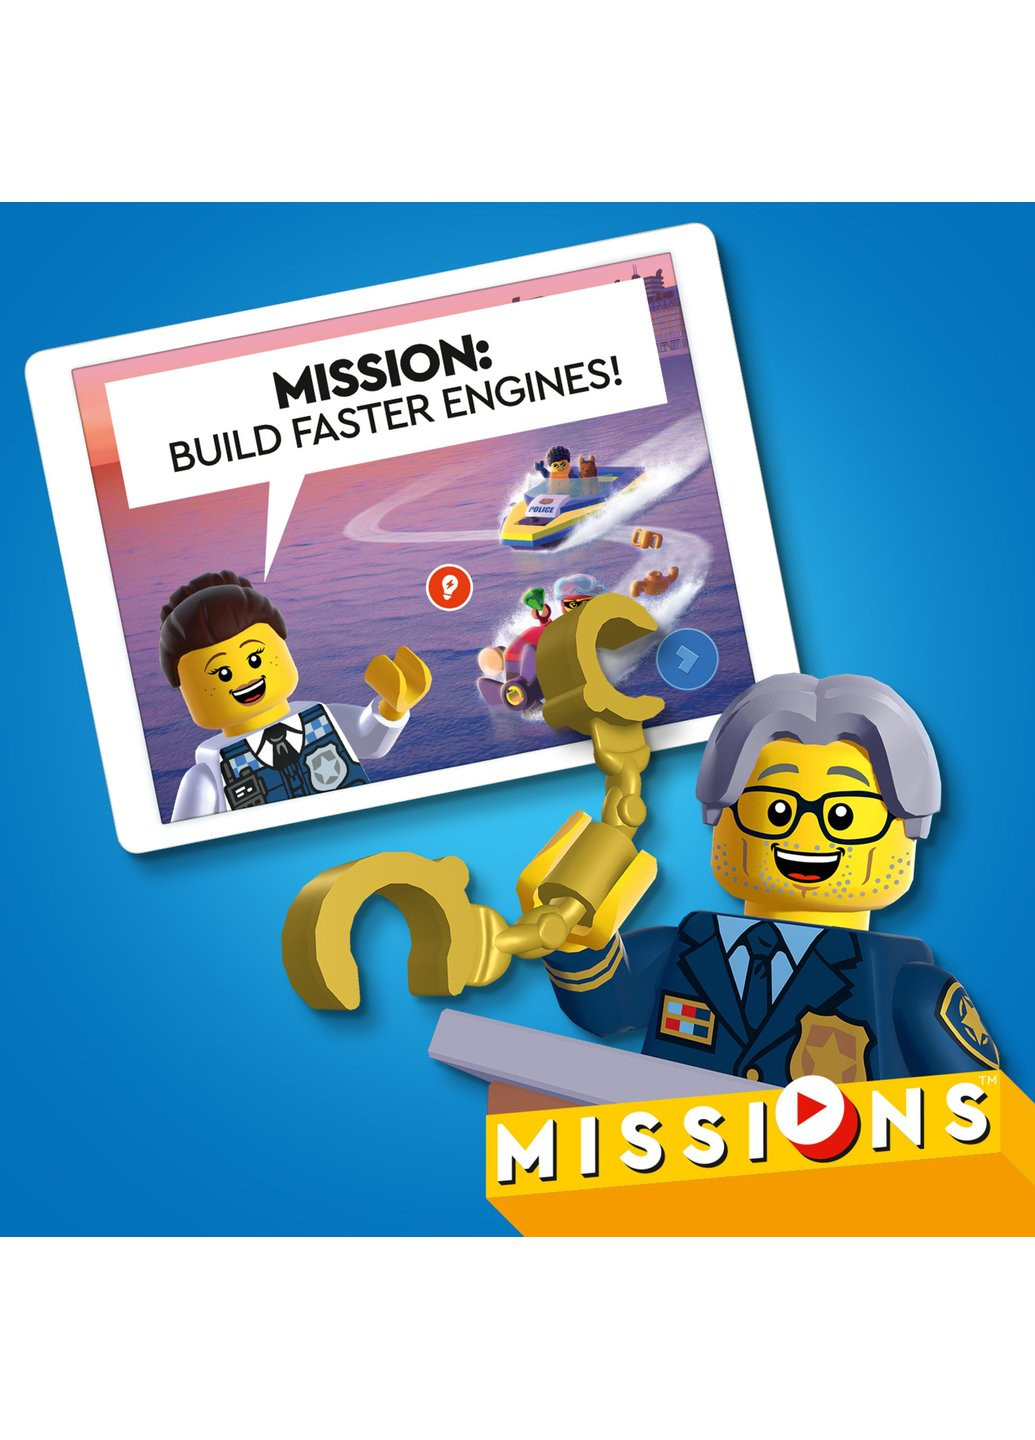 Конструктор City Missions Детективные миссии водной полиции 278 деталей (60355) Lego (257099768)